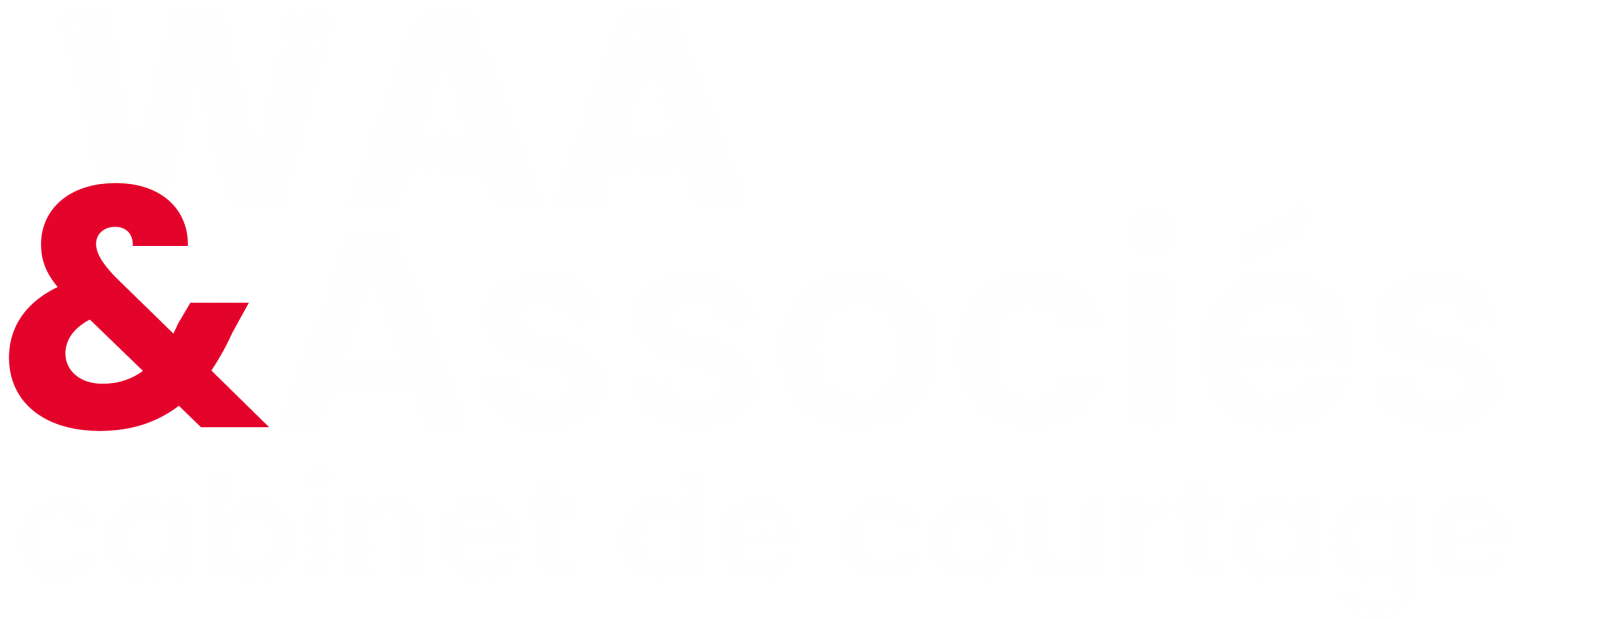 WAA & ASSOCIÉS - Cabinet de courtage